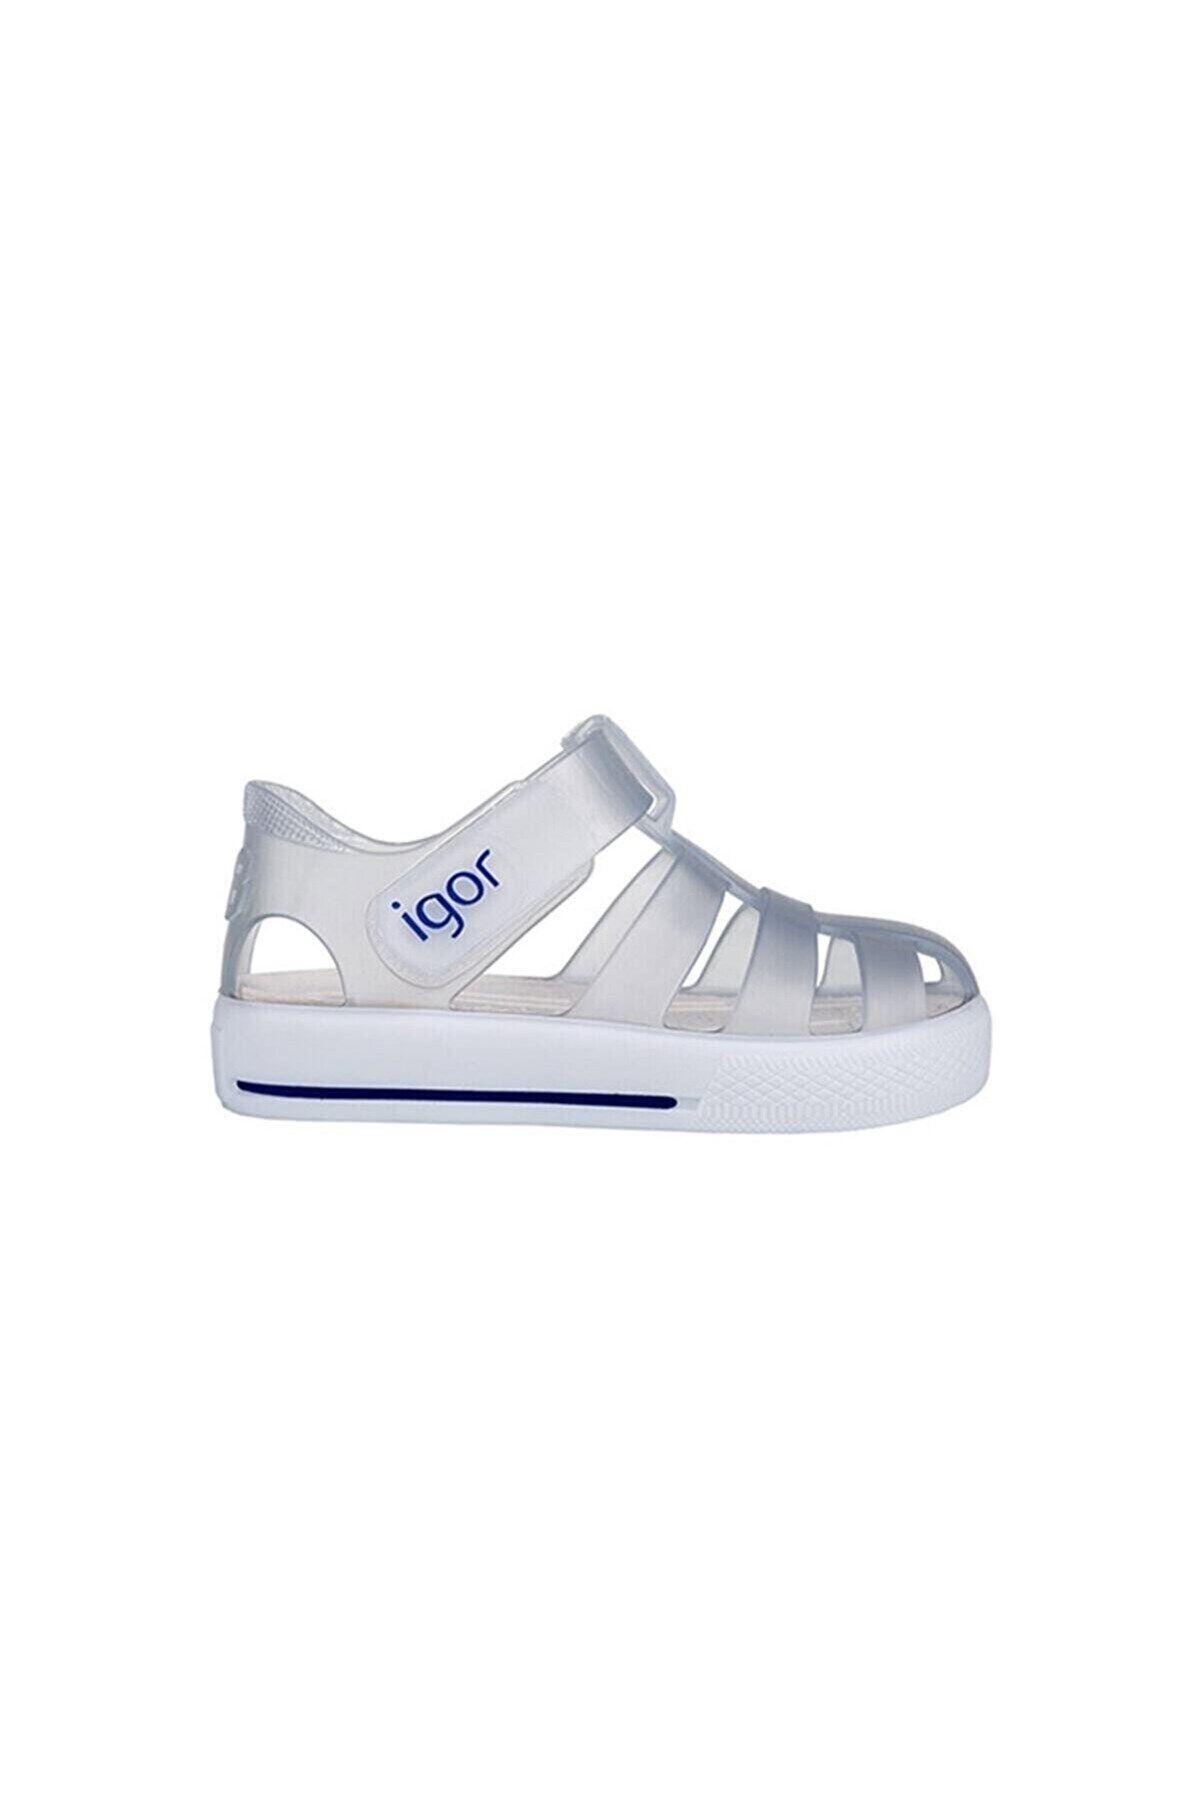 IGOR Star Çocuk Sandalet Ayakkabı S10171-038blanco